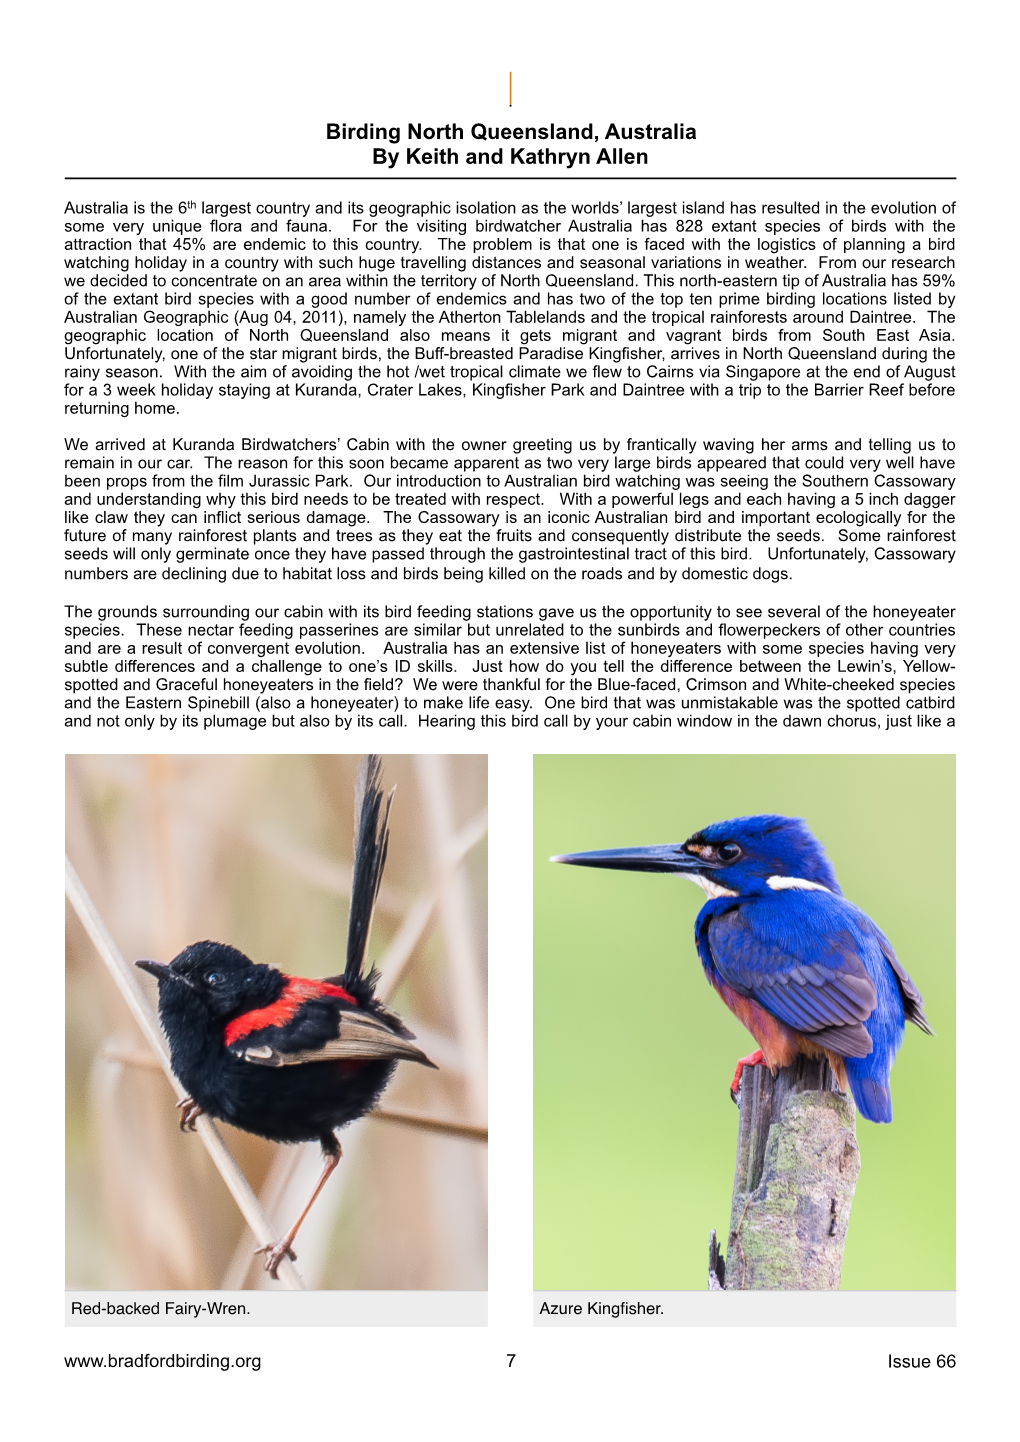 Birding North Queensland, Australia by Keith and Kathryn Allen